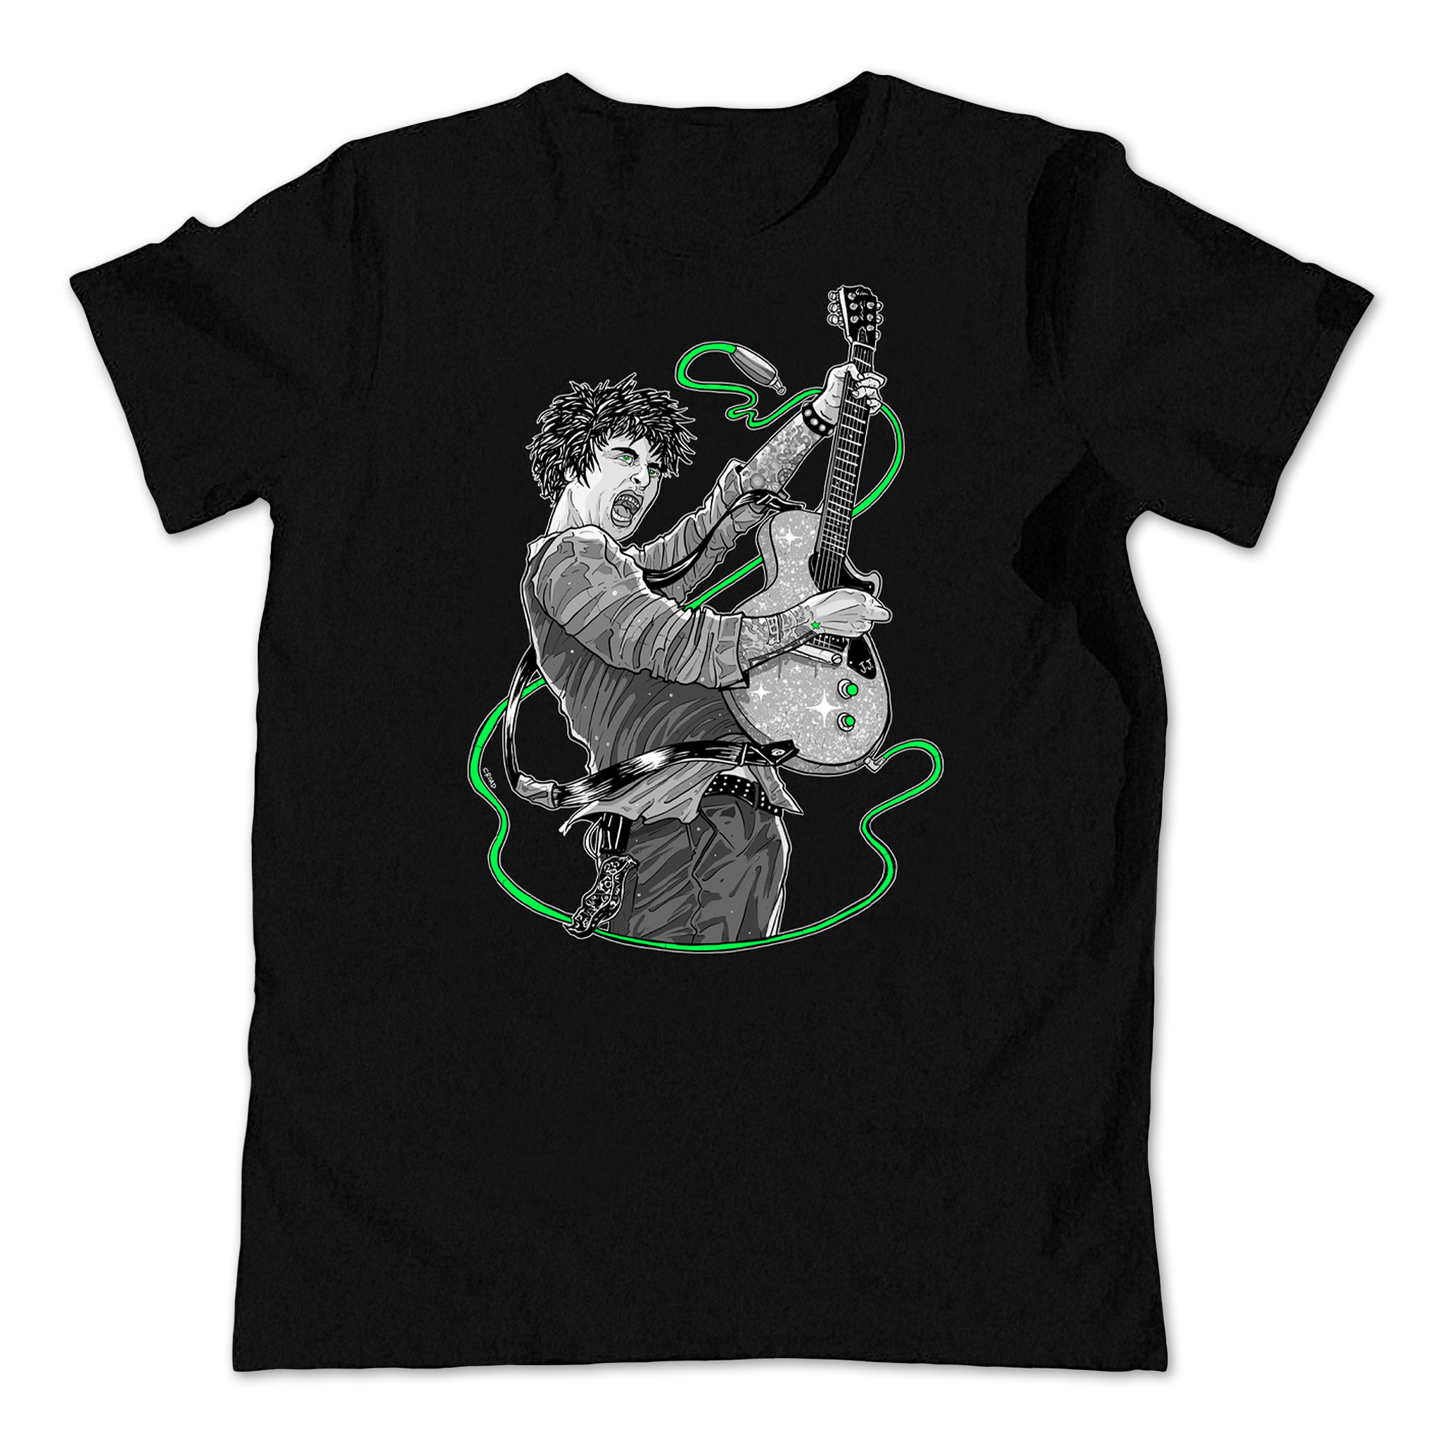 Billie Joe Armstrong (Green Day) T-shirt